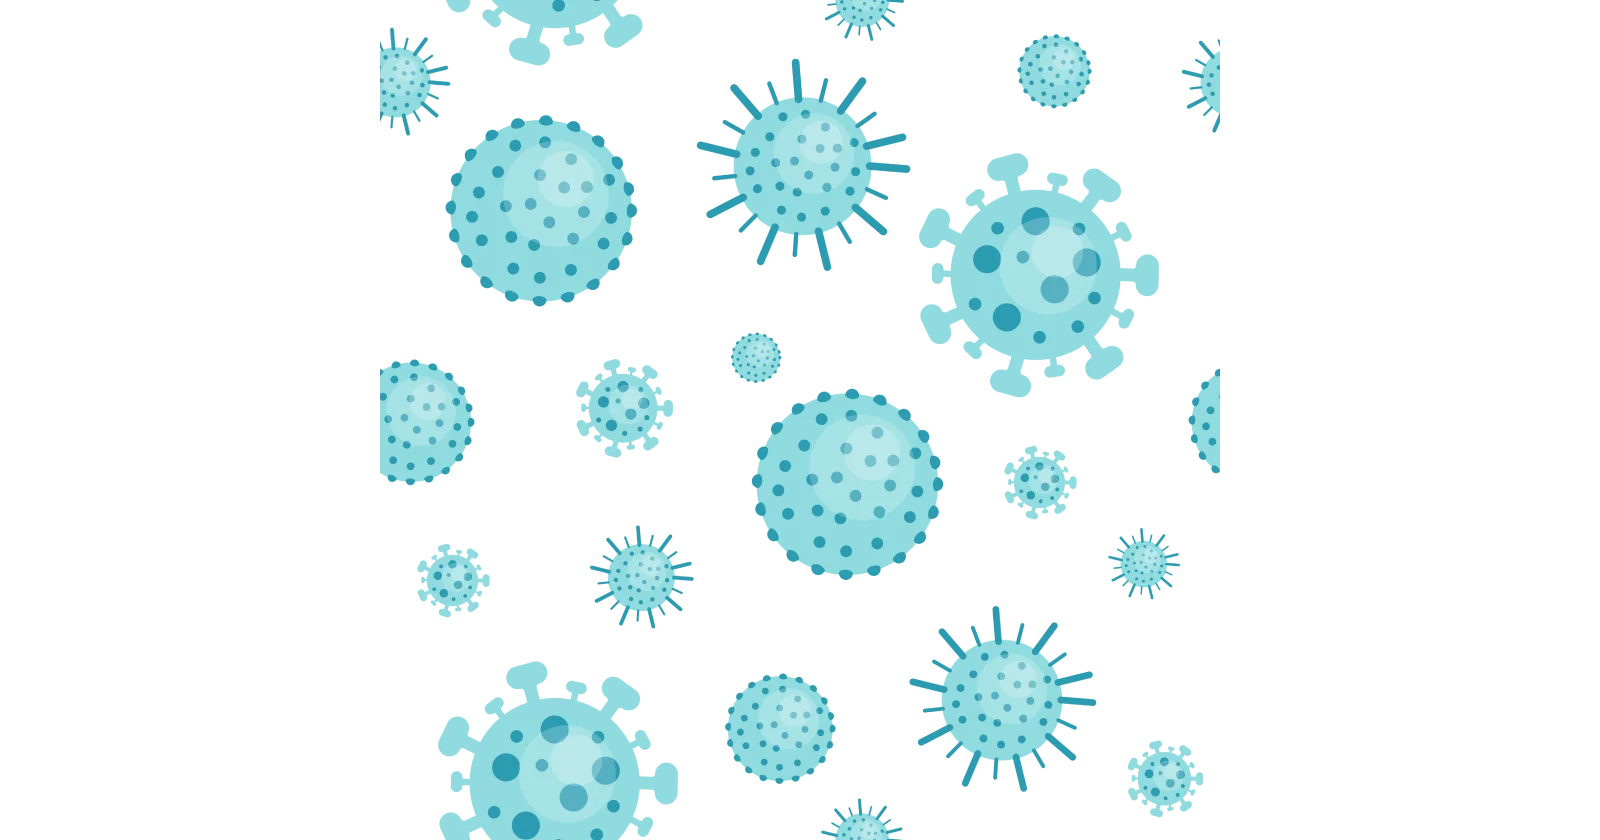 Types of diseases caused by viruses